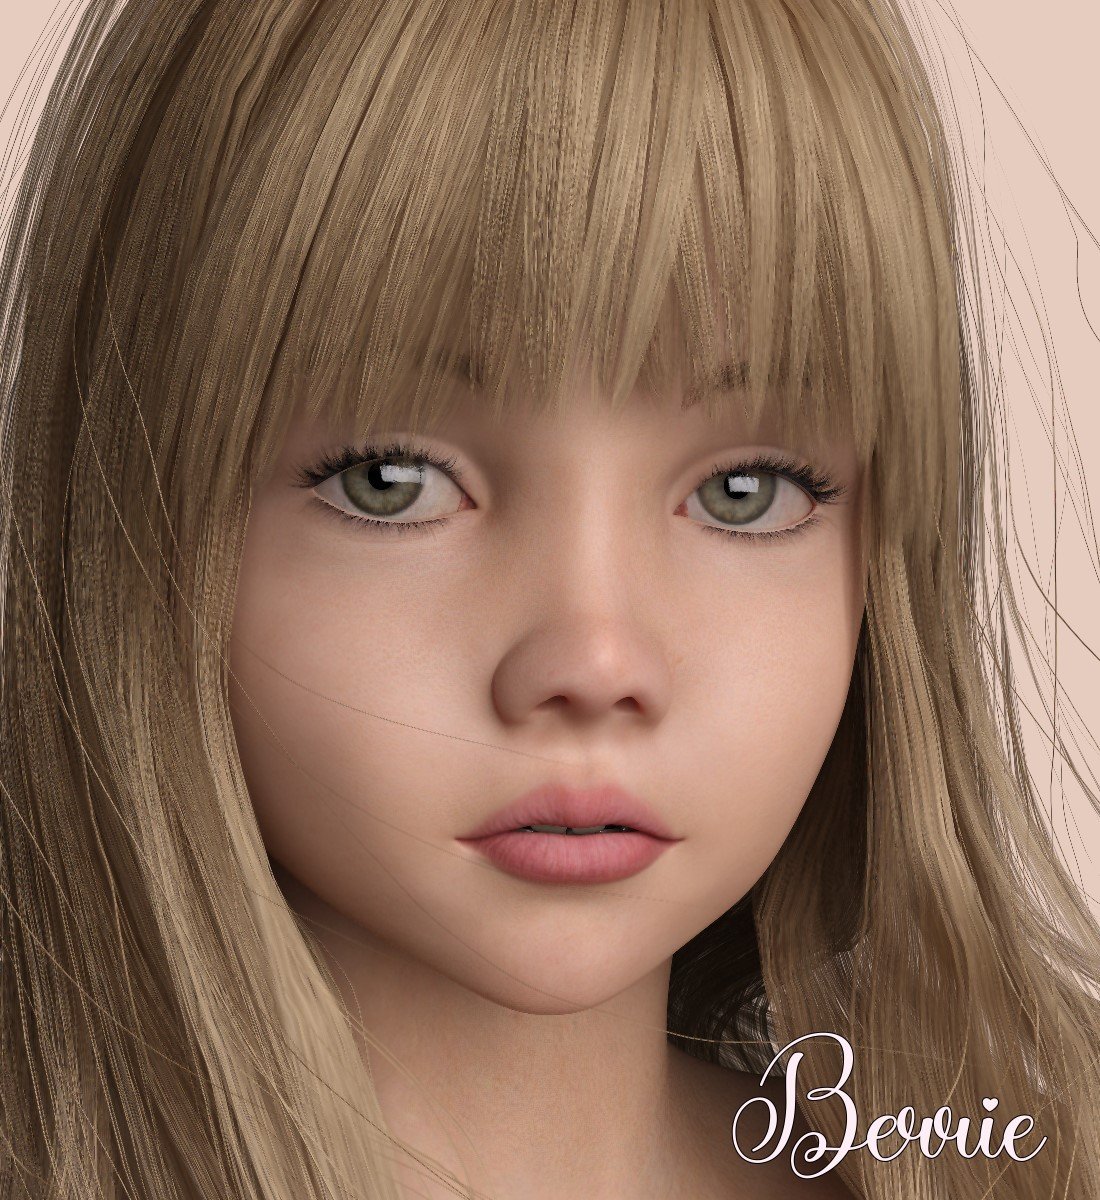 Berrie - G8F by: LUNA3D, 3D Models by Daz 3D